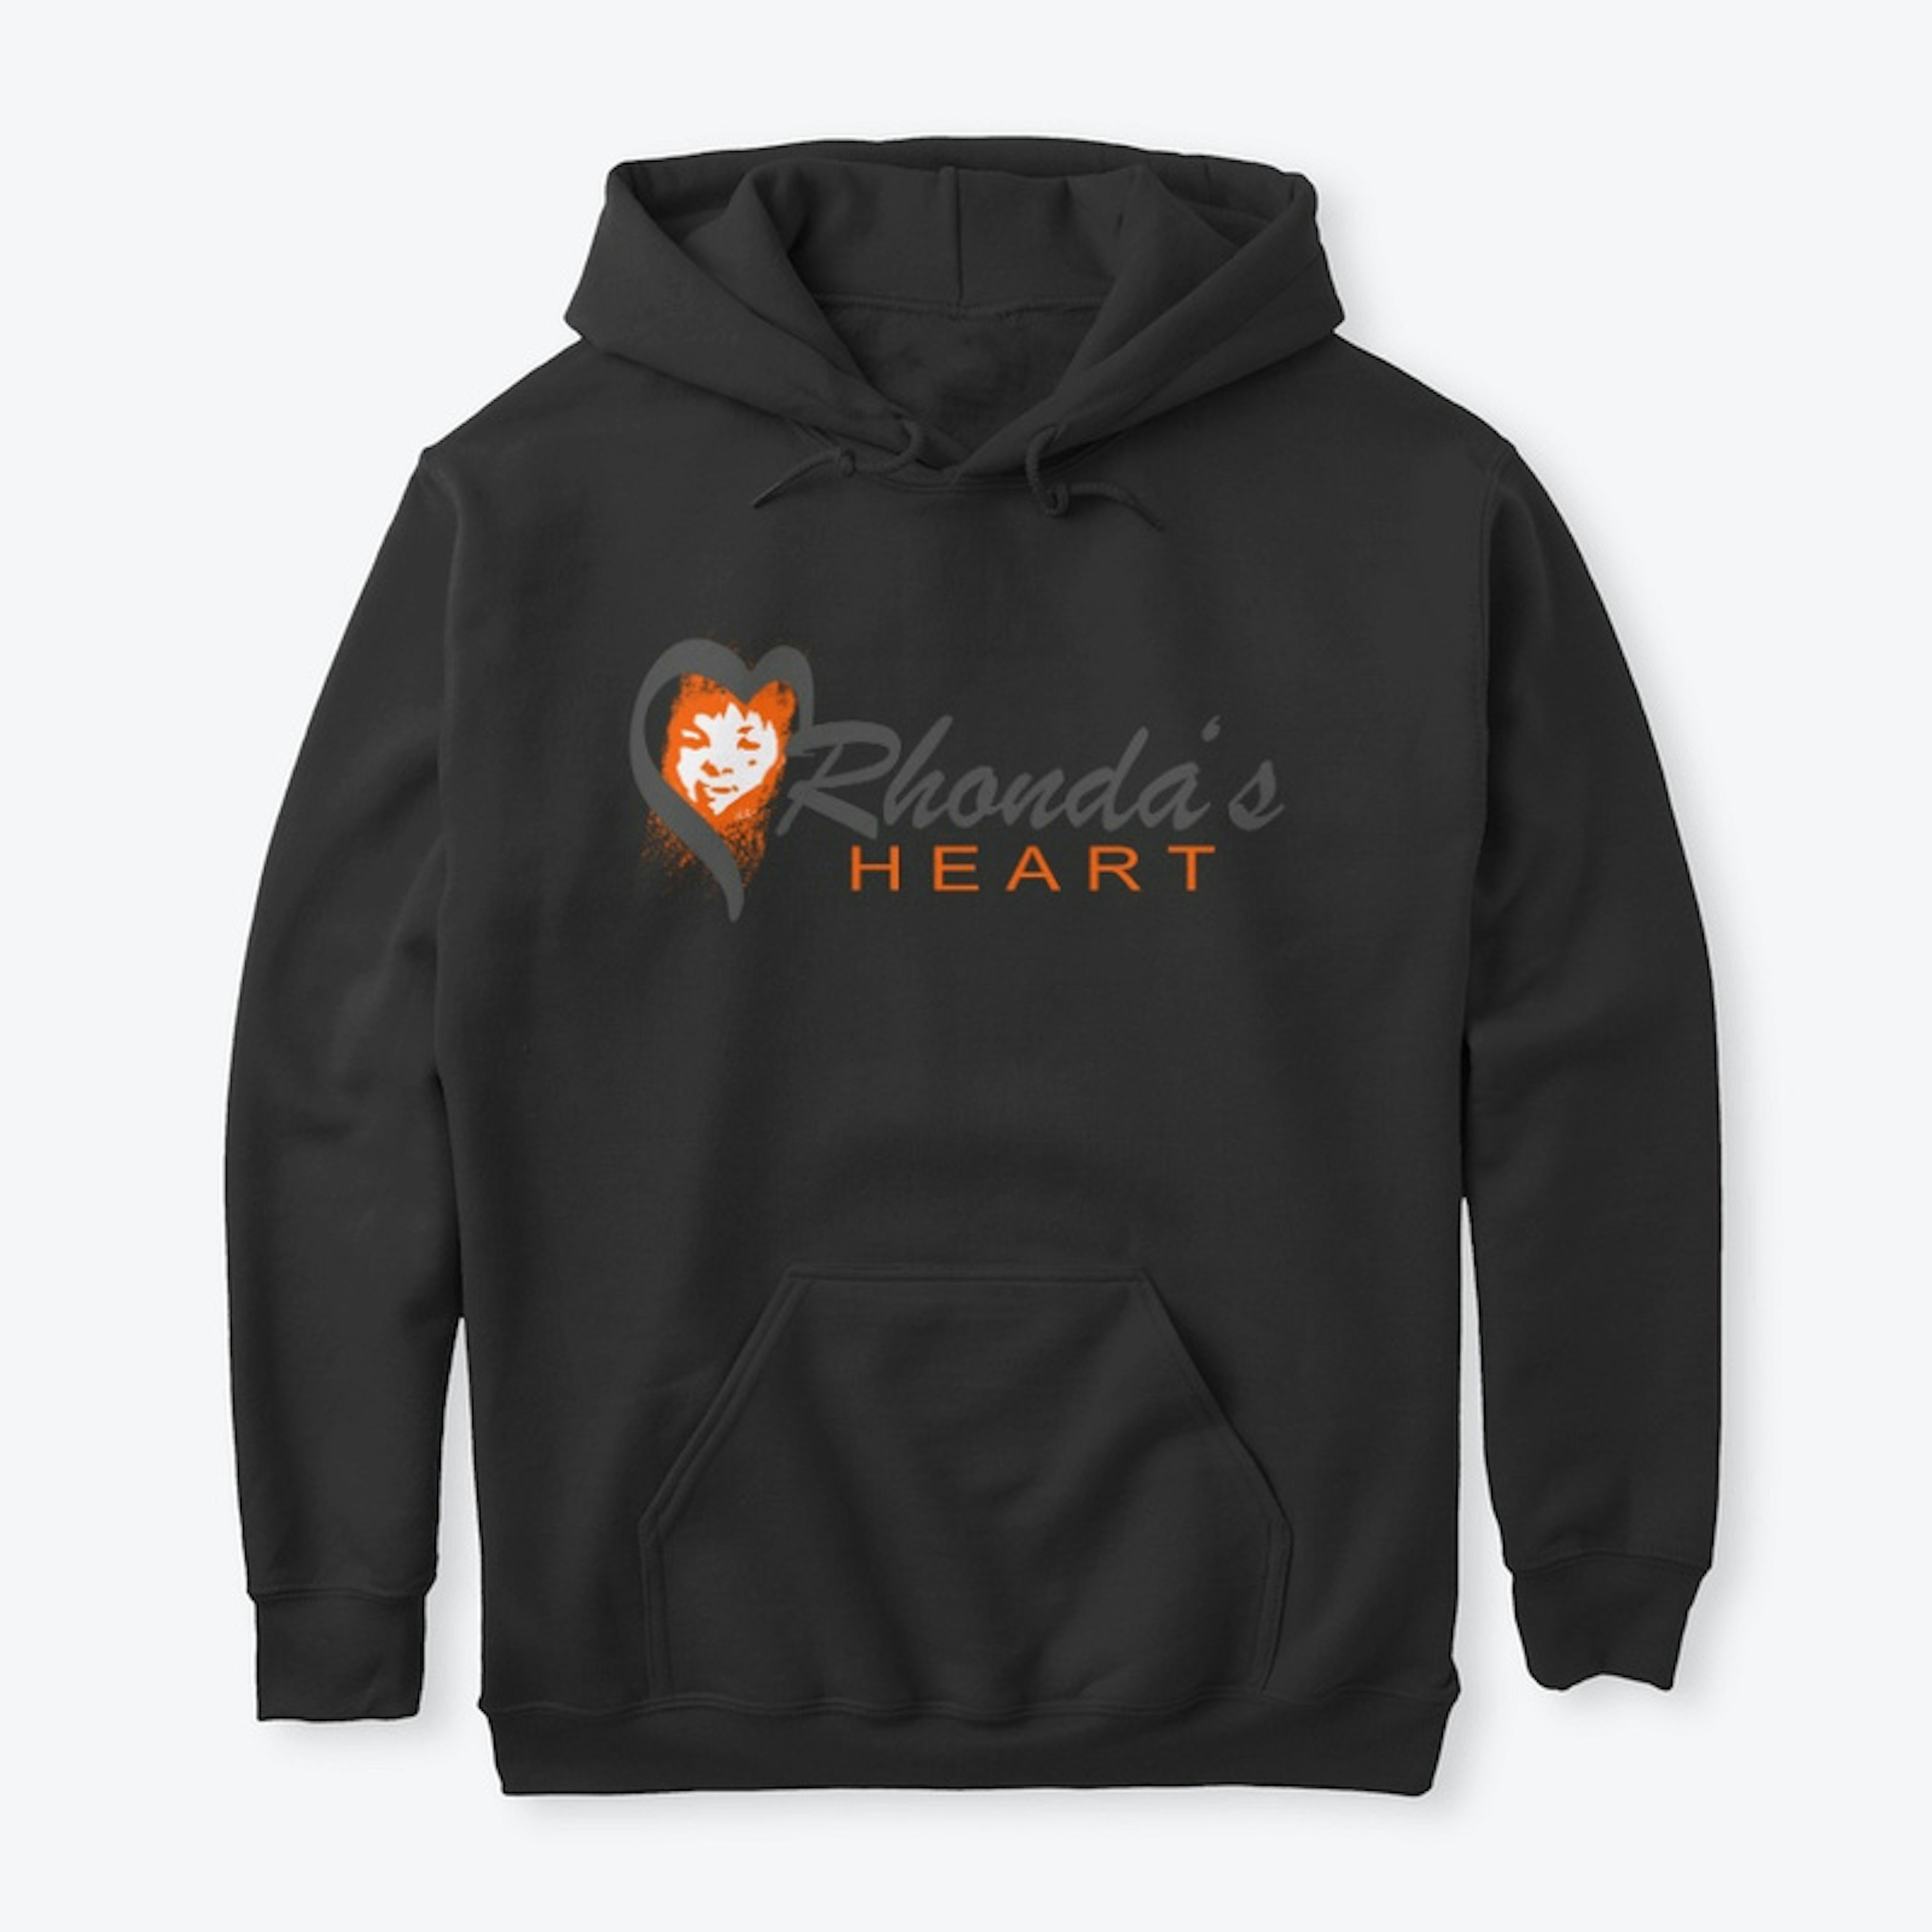 Rhonda's Heart